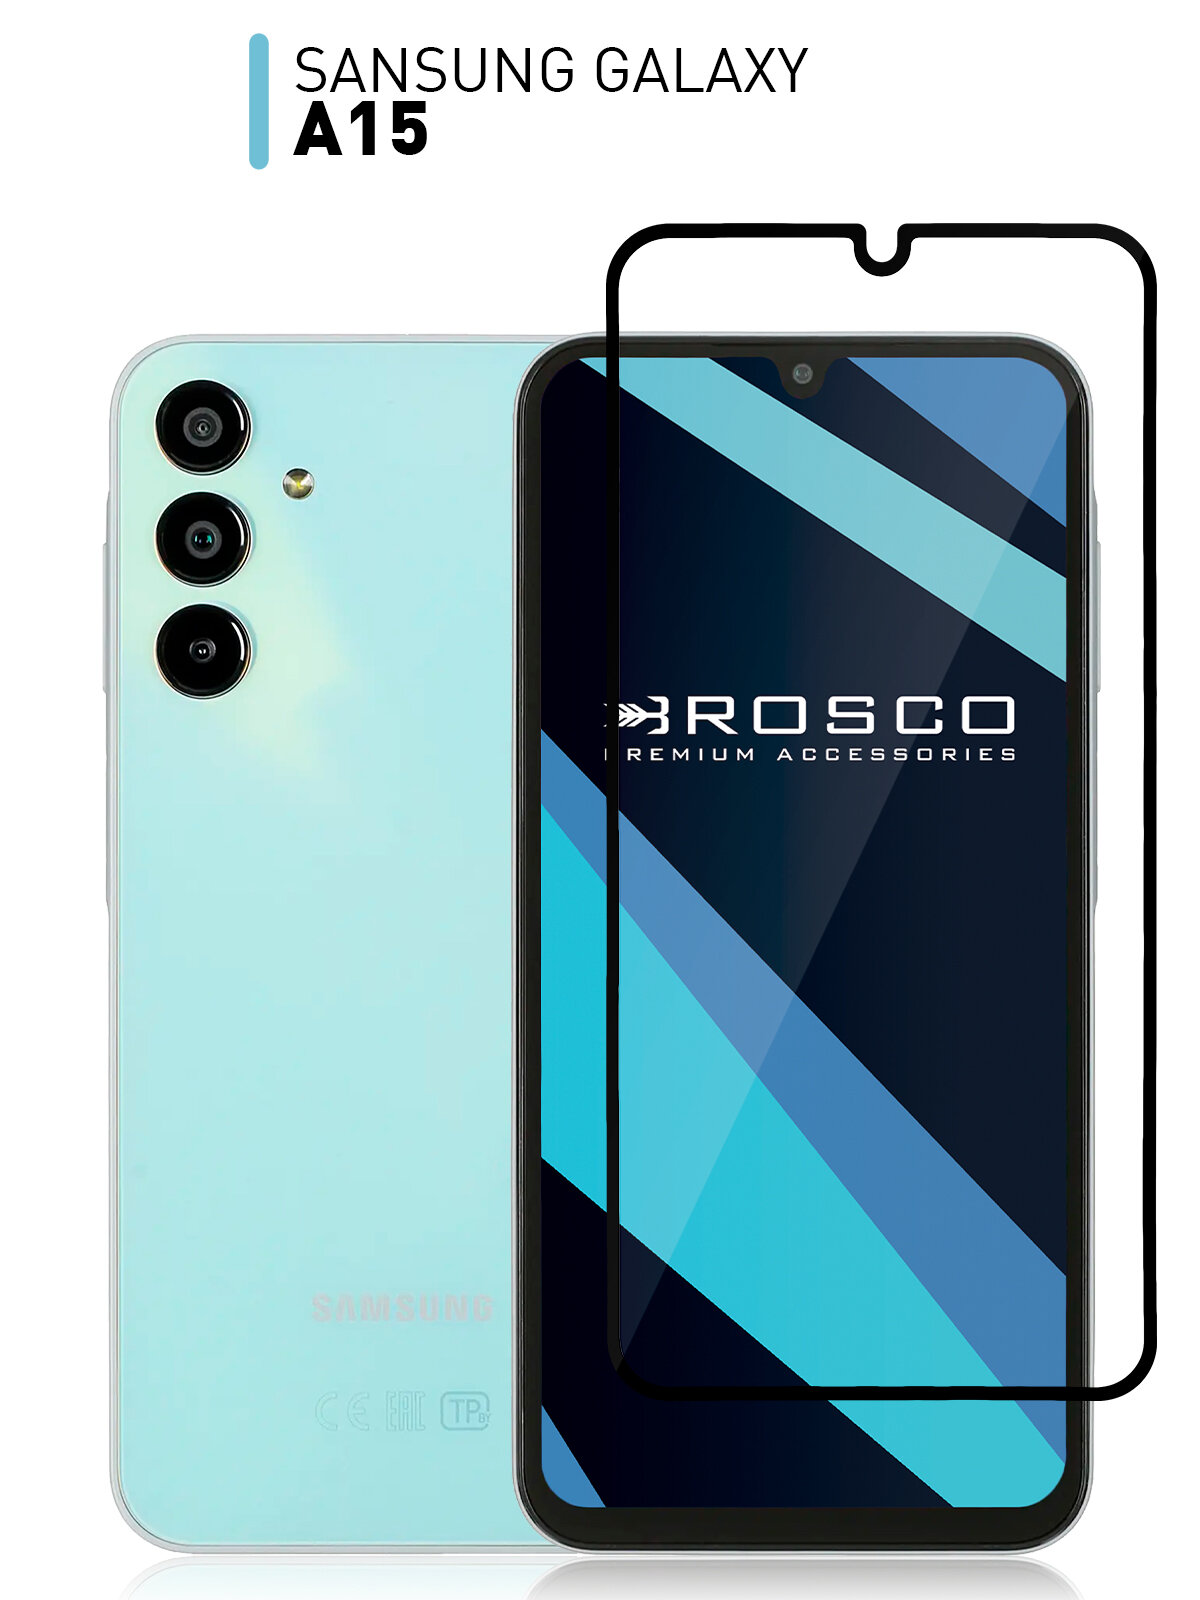 Защитное стекло ROSCO для Samsung Galaxy A15 (Самсунг Галакси А15) противоударное стекло, олеофобное покрытие, прозрачное стекло, с рамкой